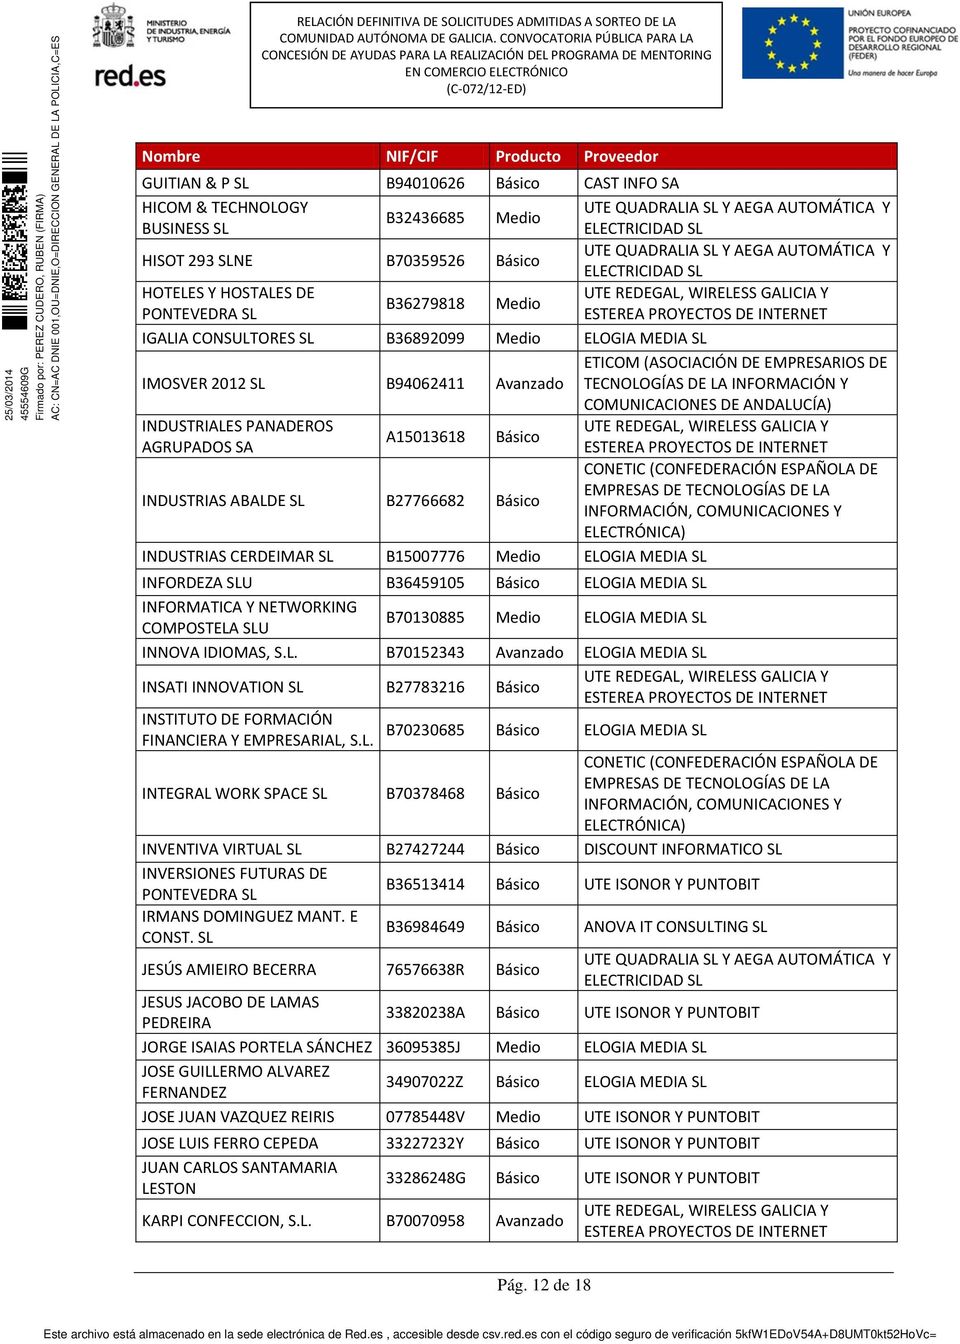 Básico AGRUPADOS SA INDUSTRIAS ABALDE SL B27766682 Básico INDUSTRIAS CERDEIMAR SL B15007776 Medio ELOGIA MEDIA SL INFORDEZA SLU B36459105 Básico ELOGIA MEDIA SL INFORMATICA Y NETWORKING COMPOSTELA